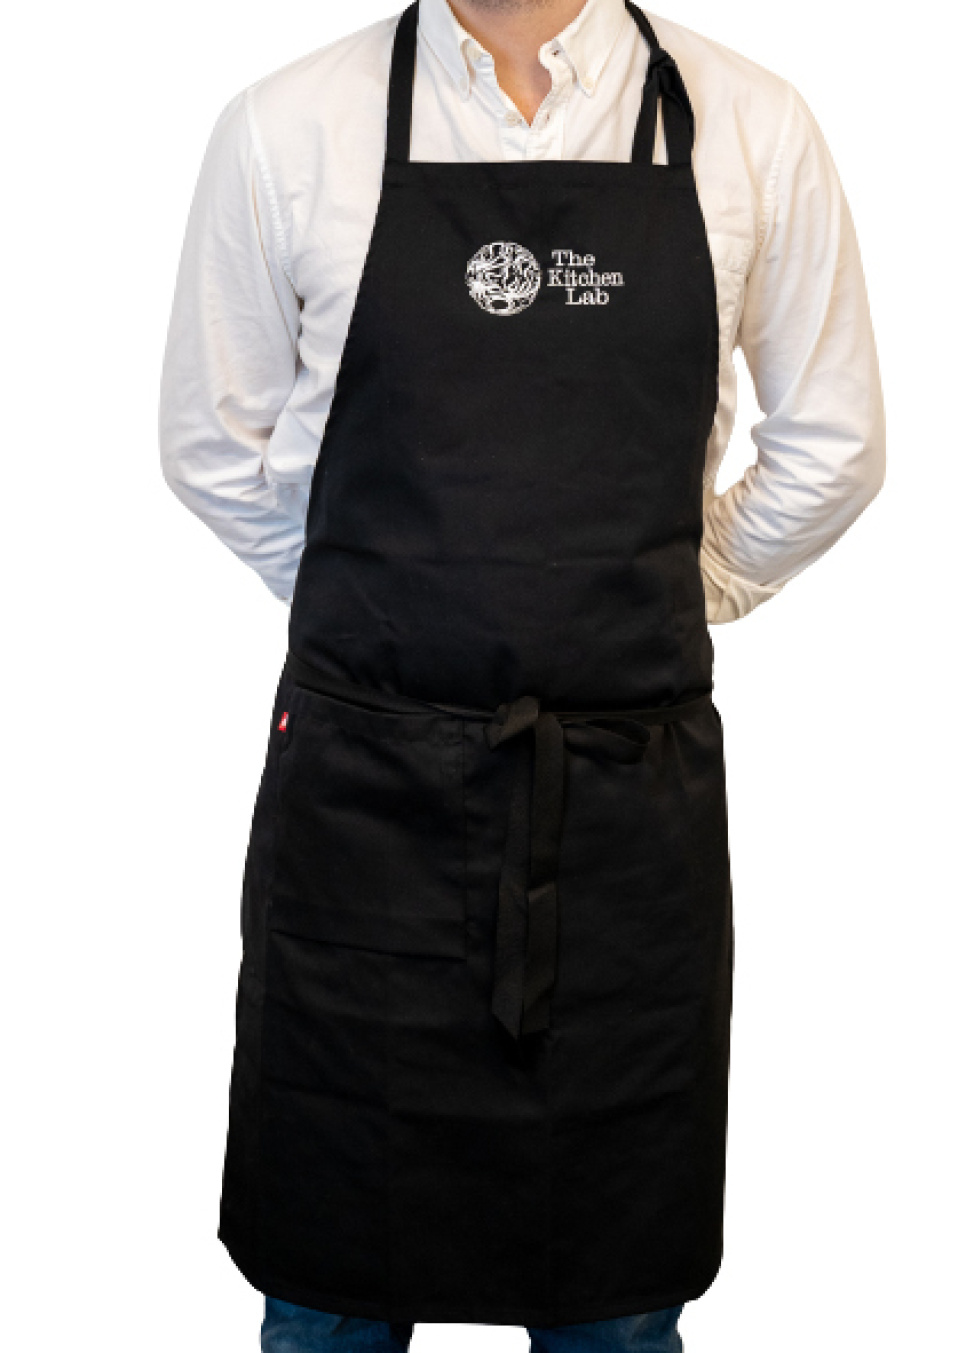 Bröstlappsförkläde med logga - KitchenLab i gruppen Matlagning / Kökstextilier / Förkläden hos The Kitchen Lab (1317-27450)